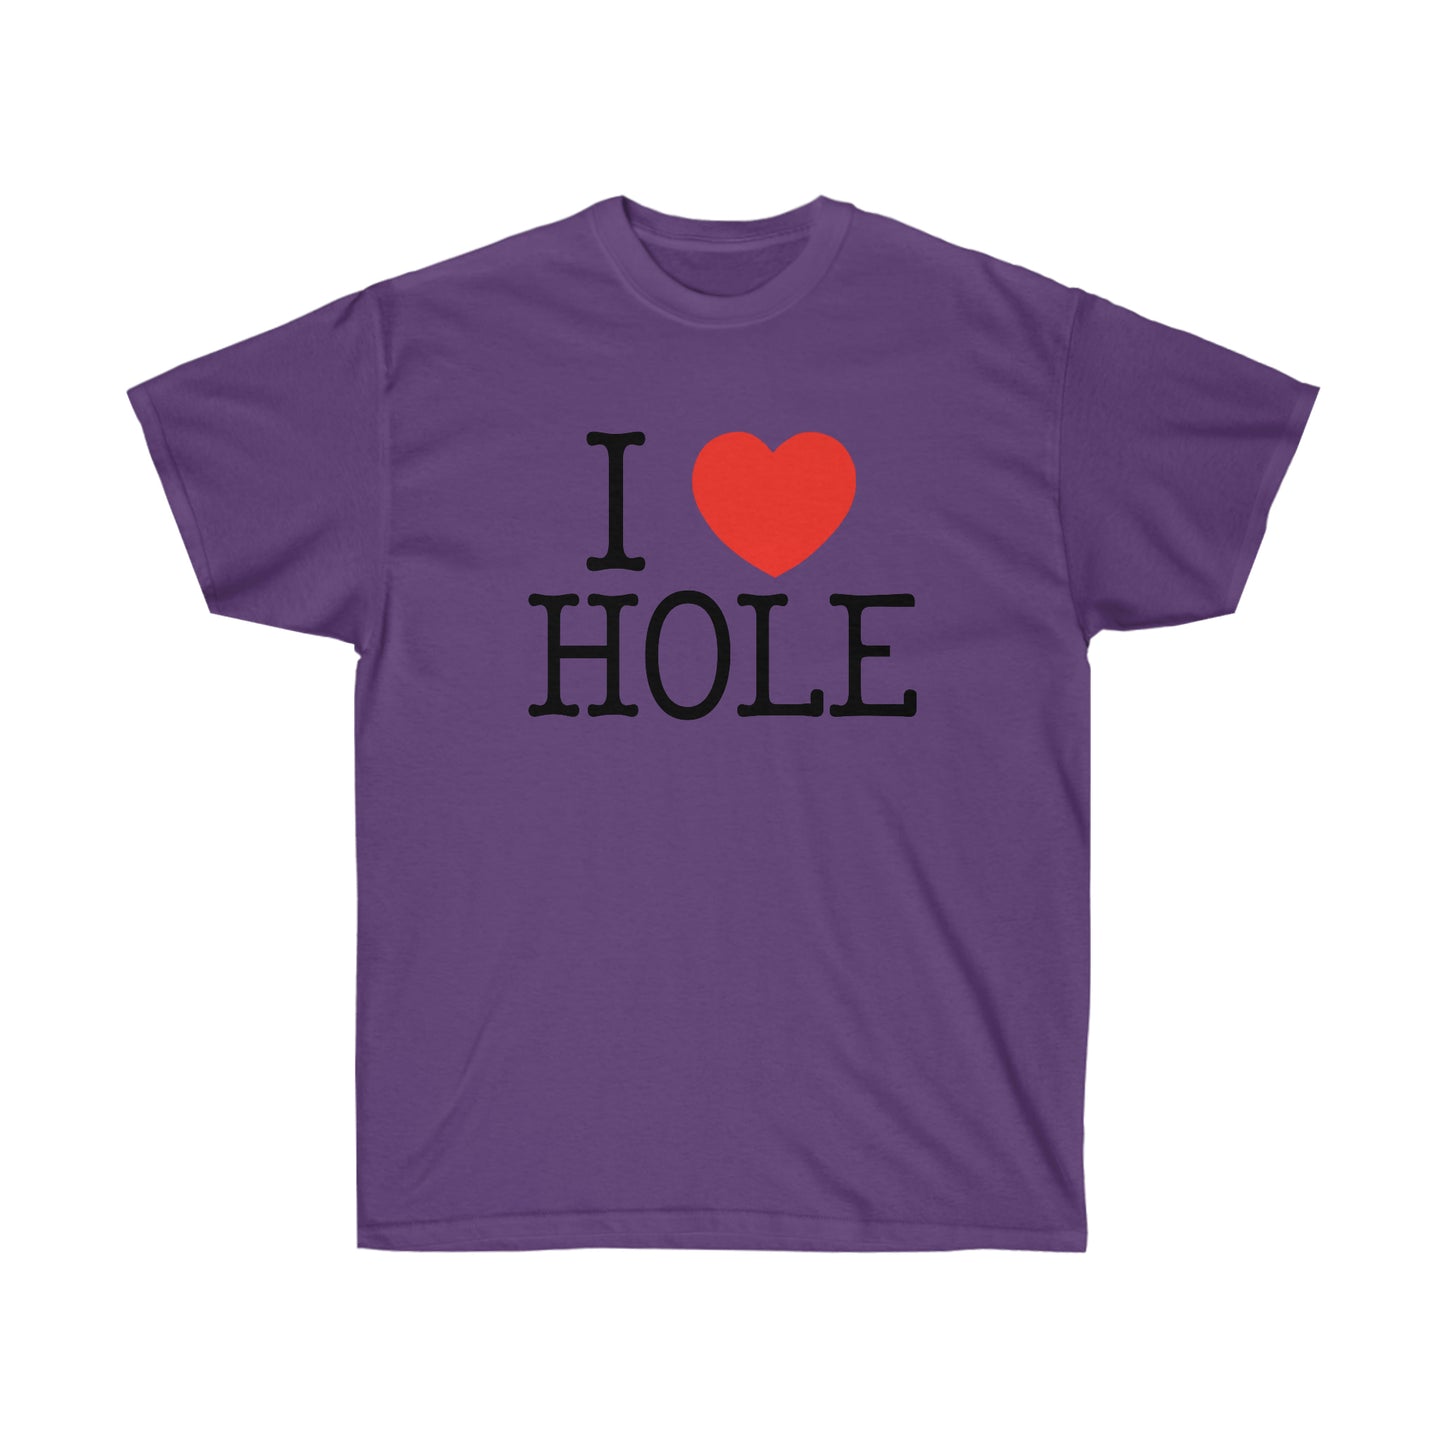 I heart HOLE shirt I l love hole Doro hedoro tee Classic T-Shirt